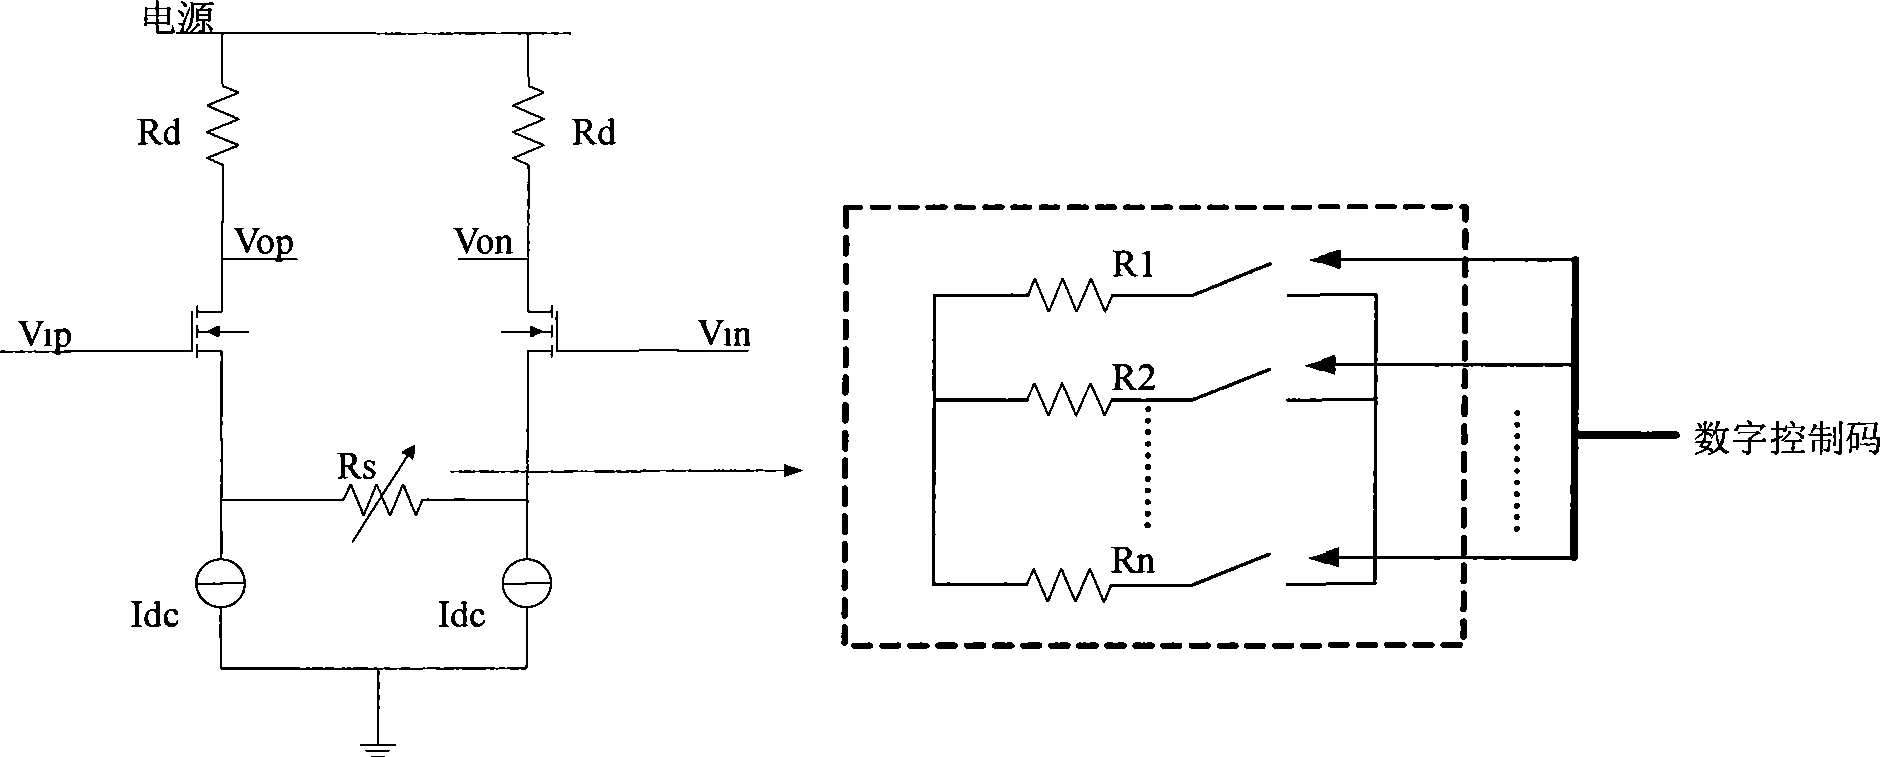 Digital gain control method and circuit